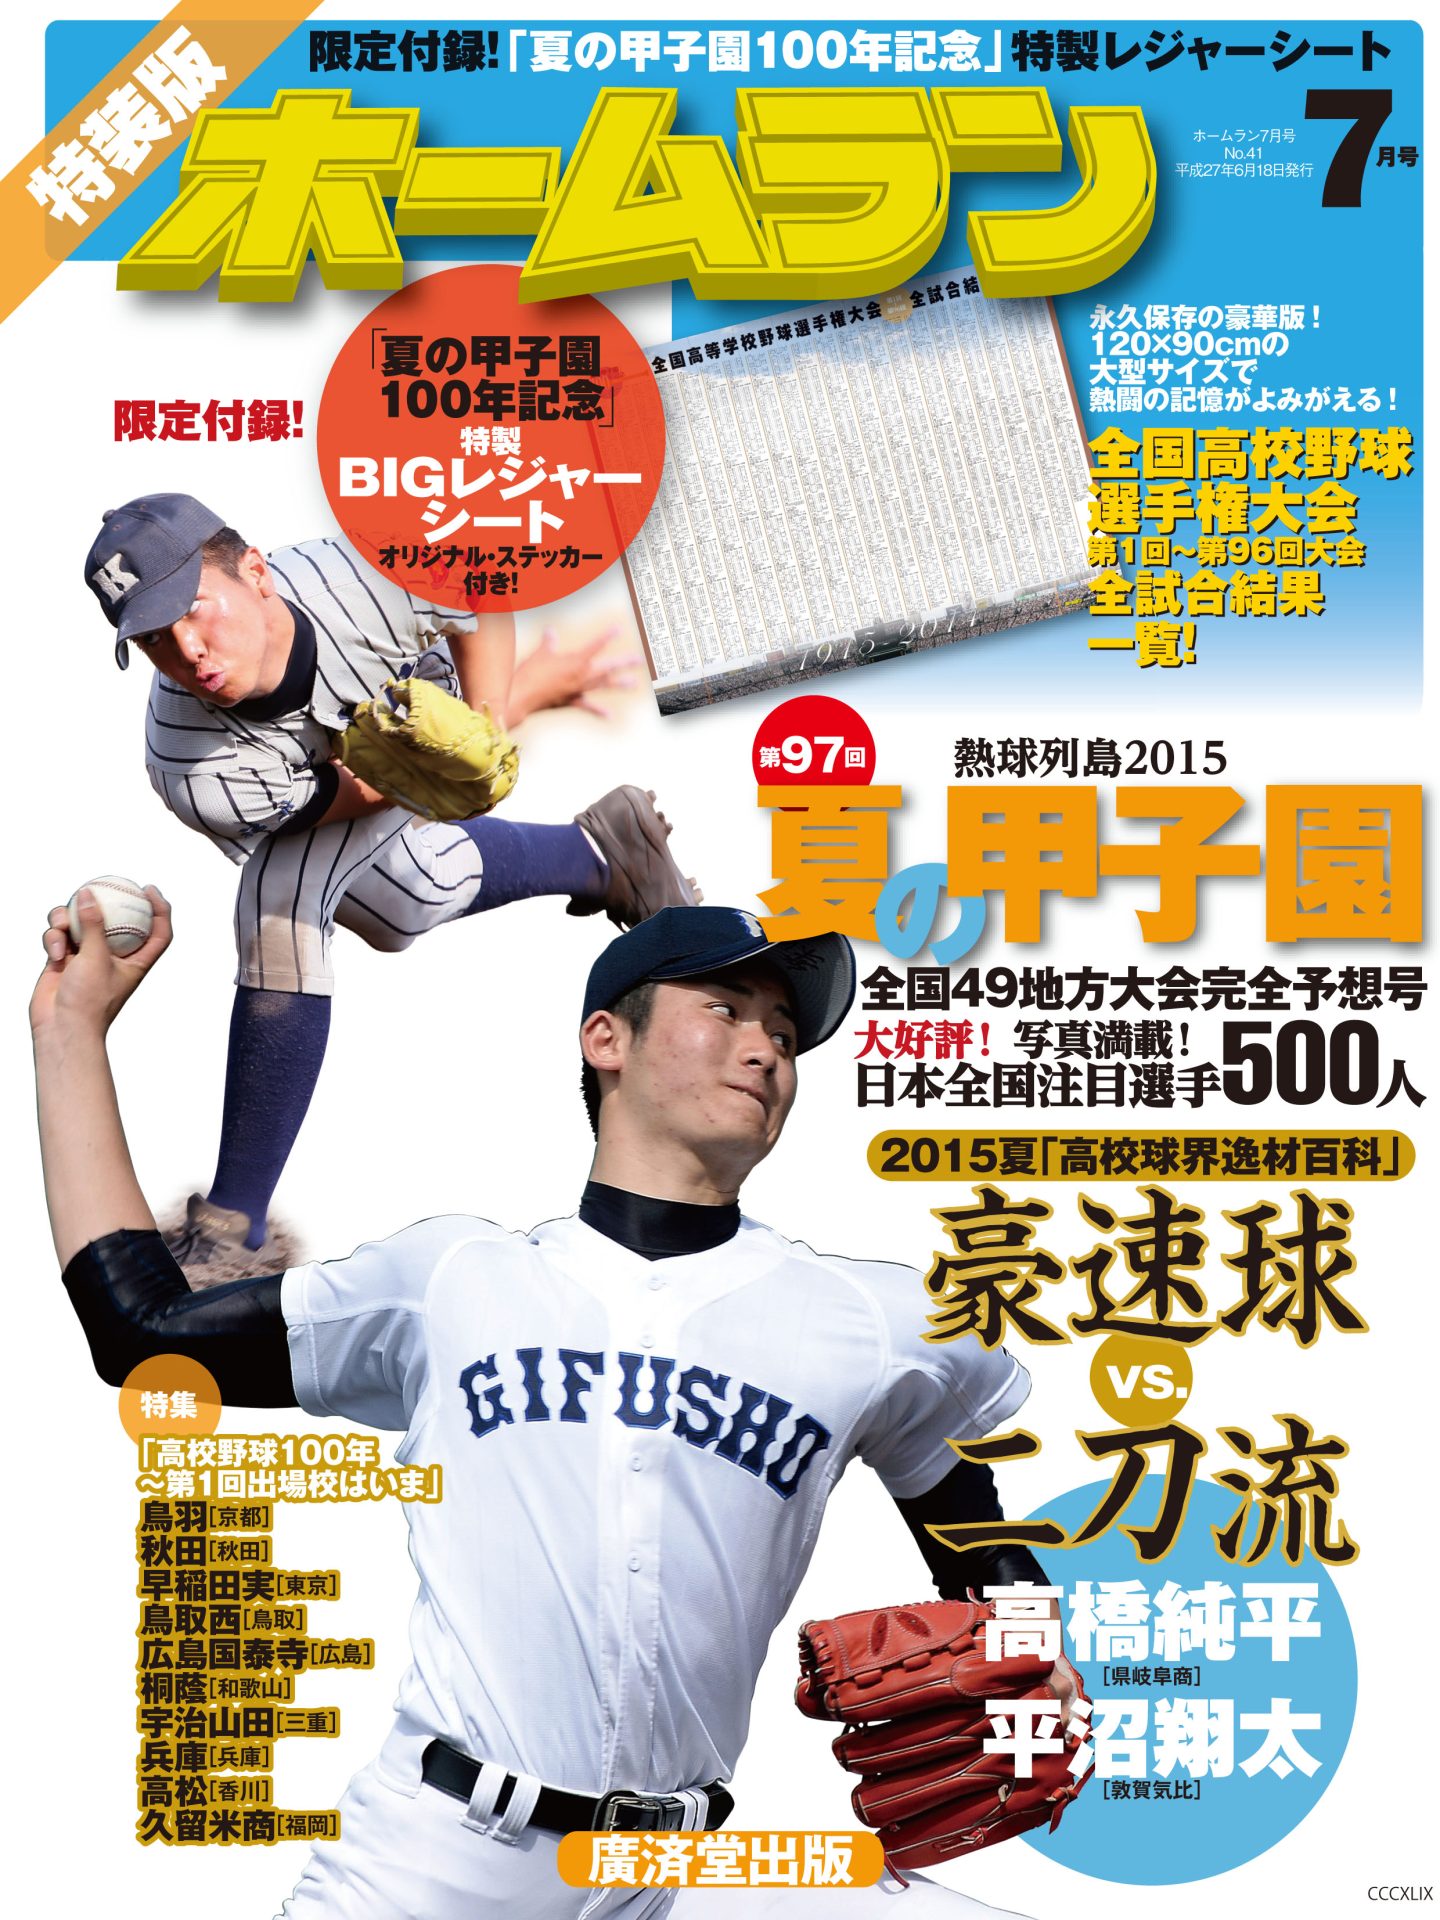 魅了 ホームラン 2013年1月号 廣済堂出版